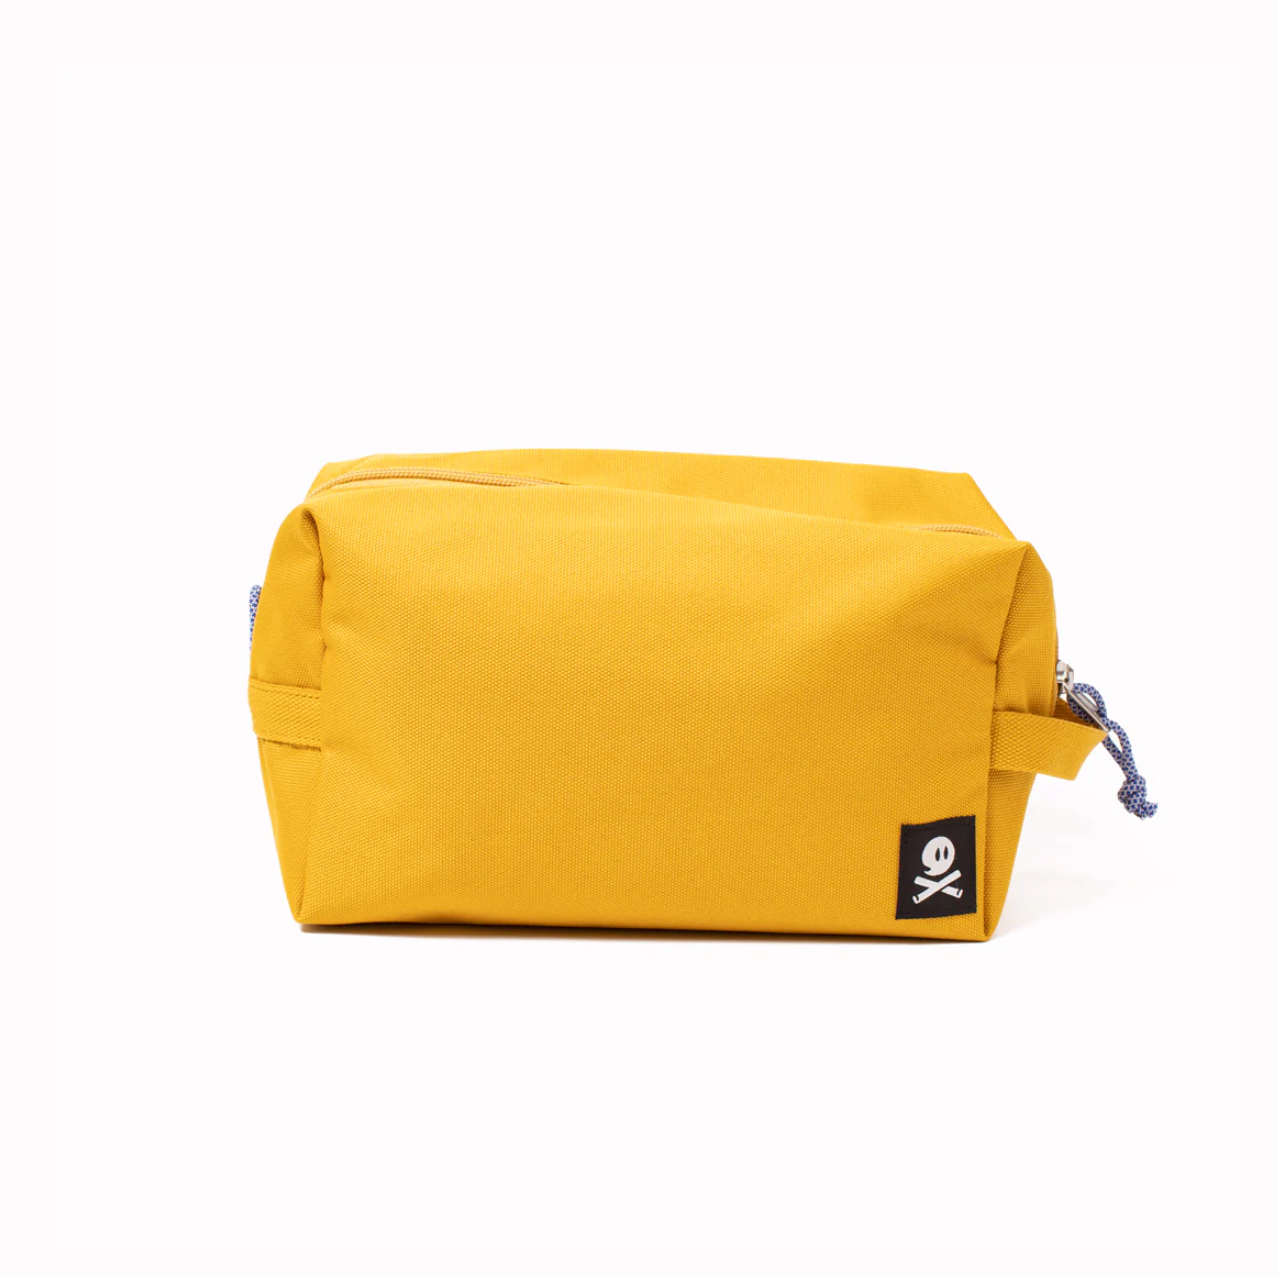 Dopp Kit Travel Bag - Ochre